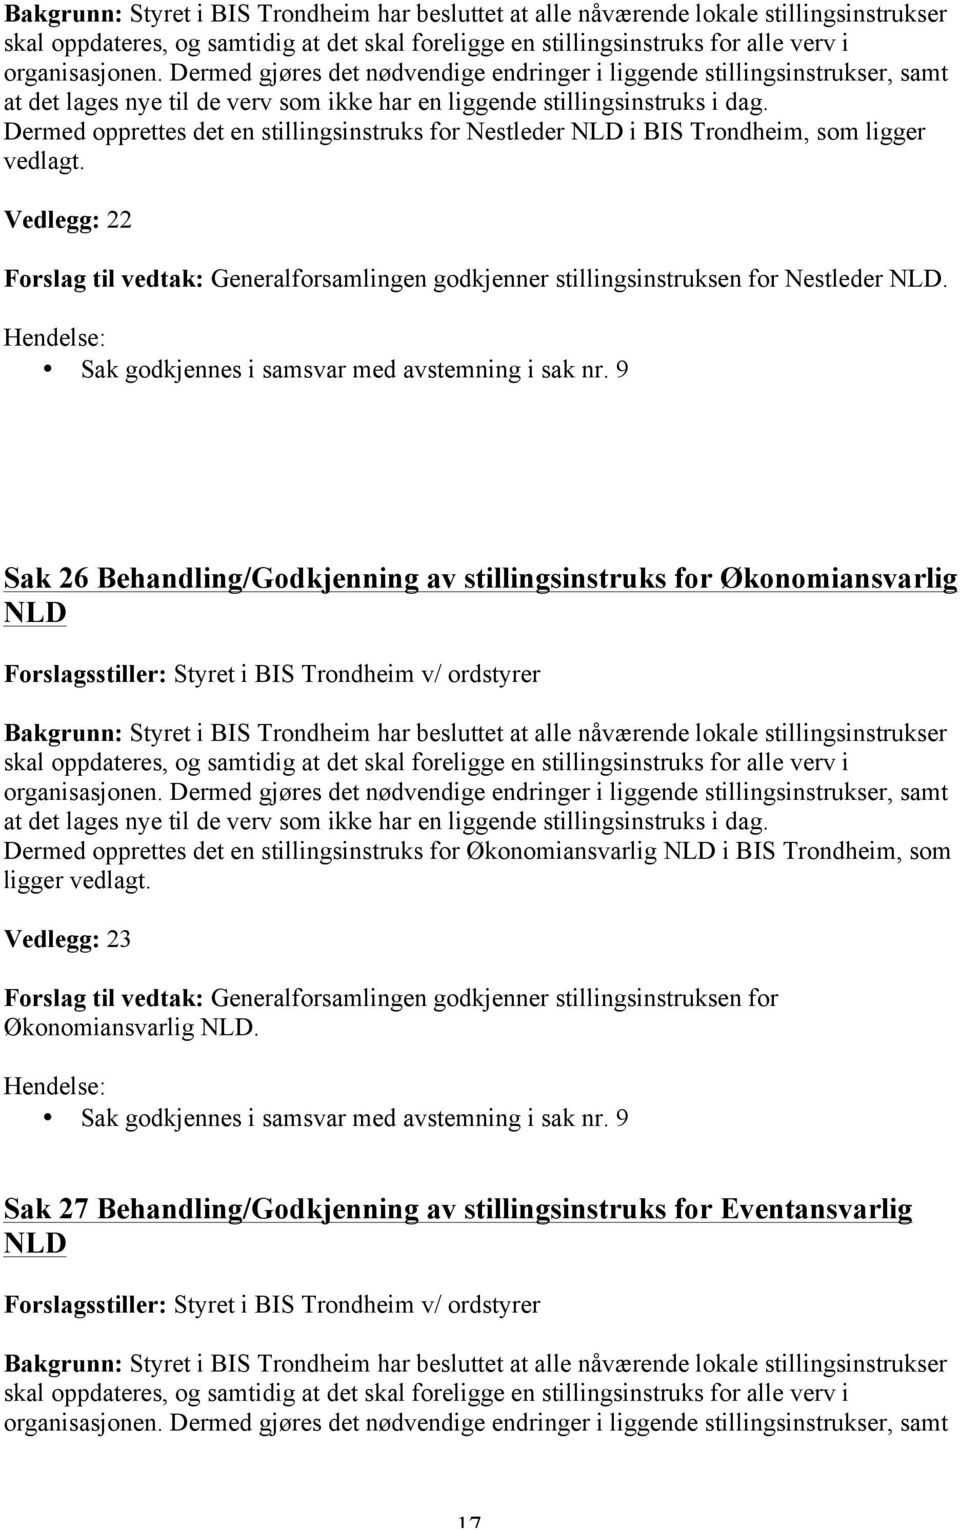 Dermed opprettes det en stillingsinstruks for Nestleder NLD i BIS Trondheim, som ligger vedlagt. Vedlegg: 22 Forslag til vedtak: Generalforsamlingen godkjenner stillingsinstruksen for Nestleder NLD.